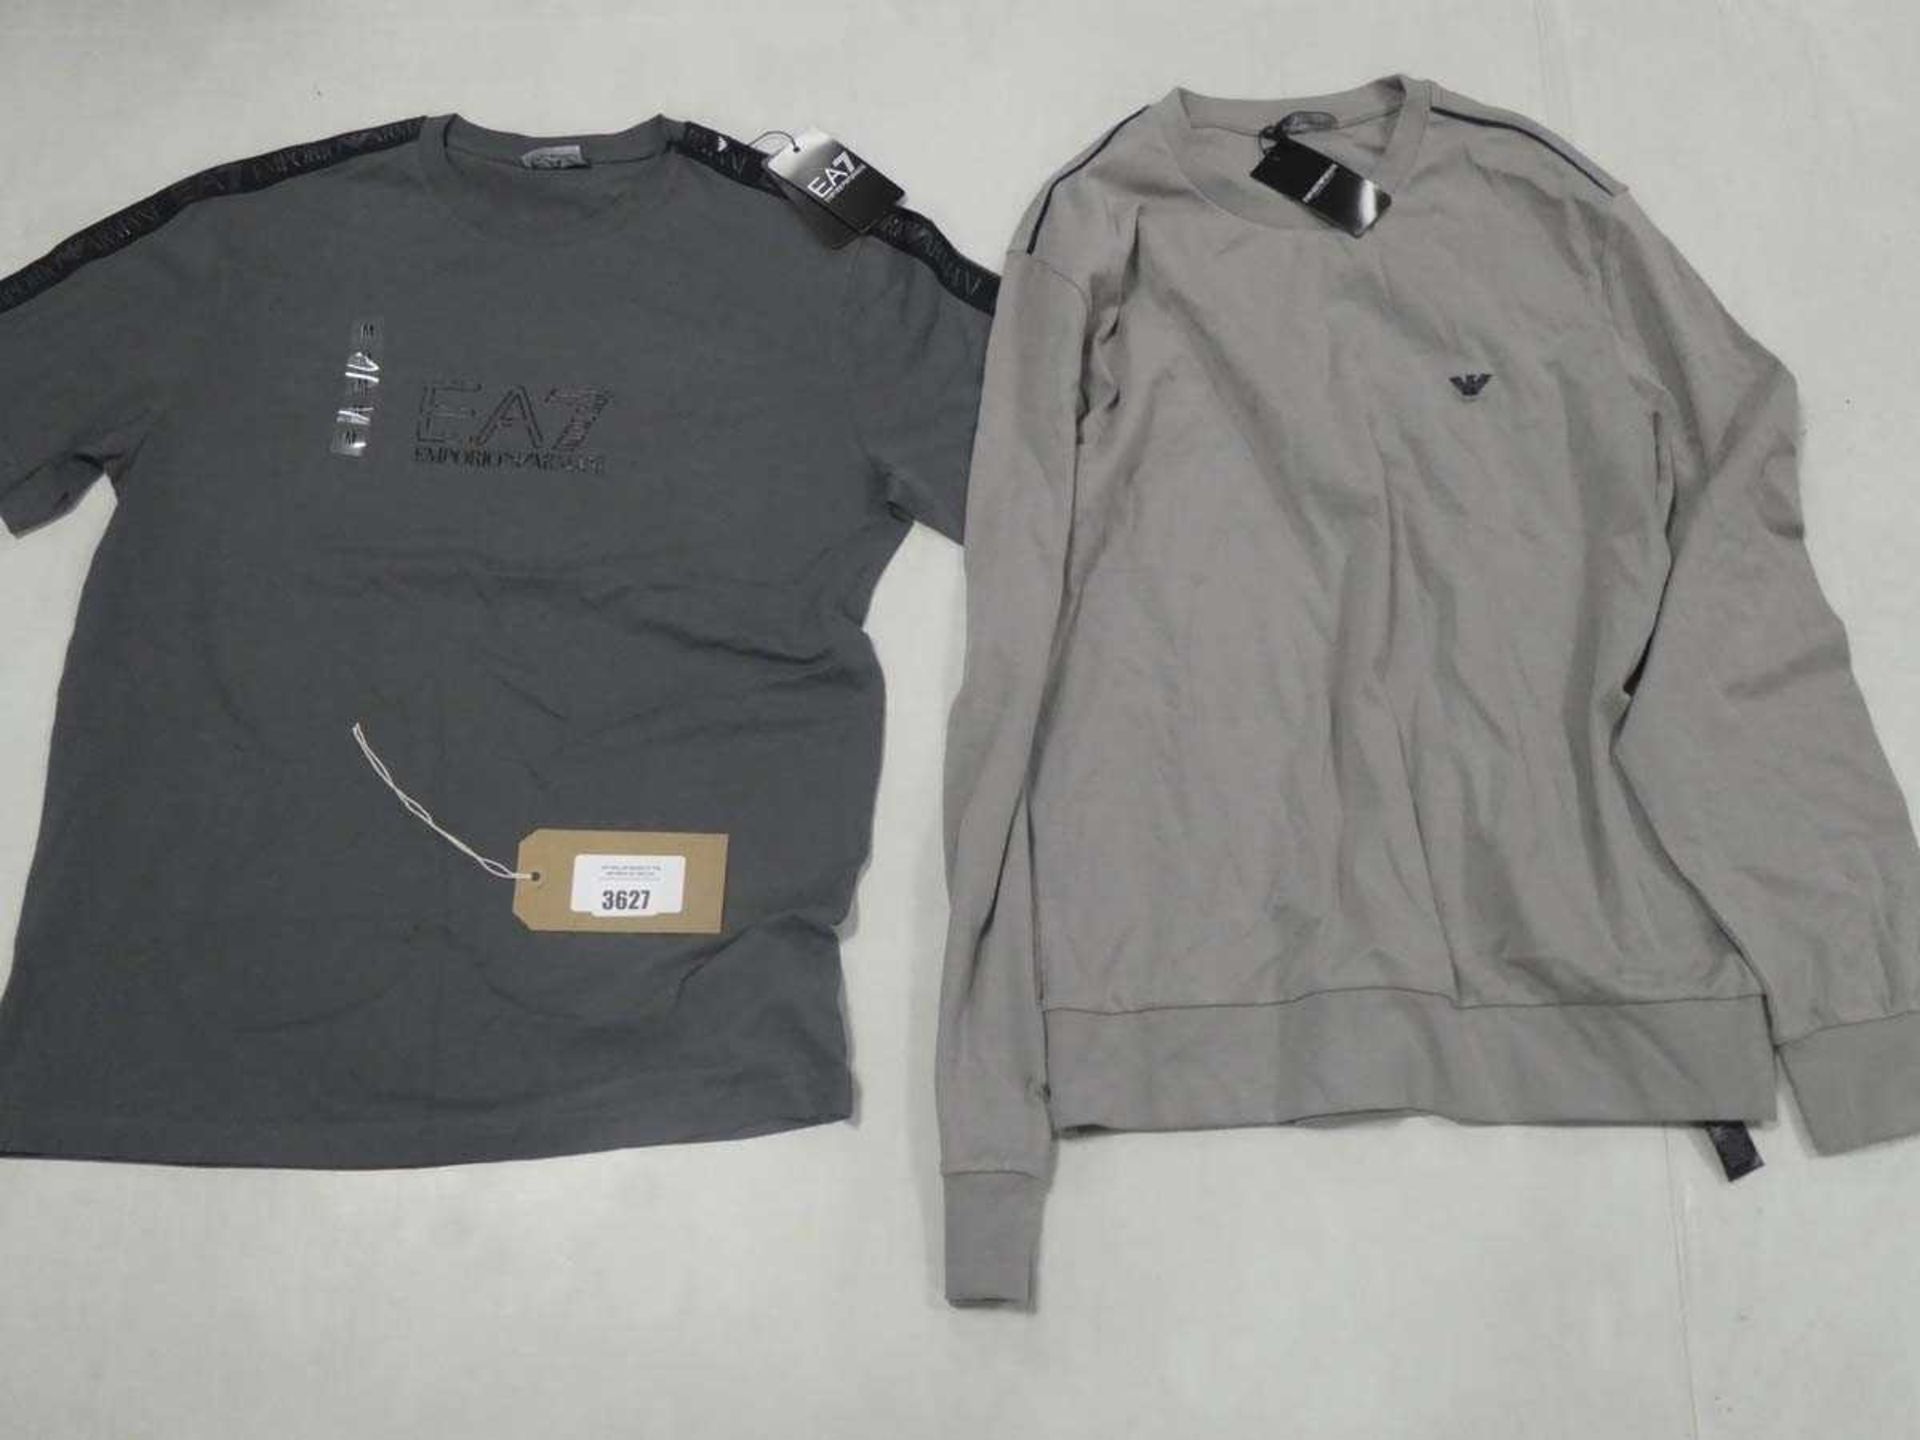 +VAT 2 Emporio Armani t-shirts in light grey and dark grey both size medium